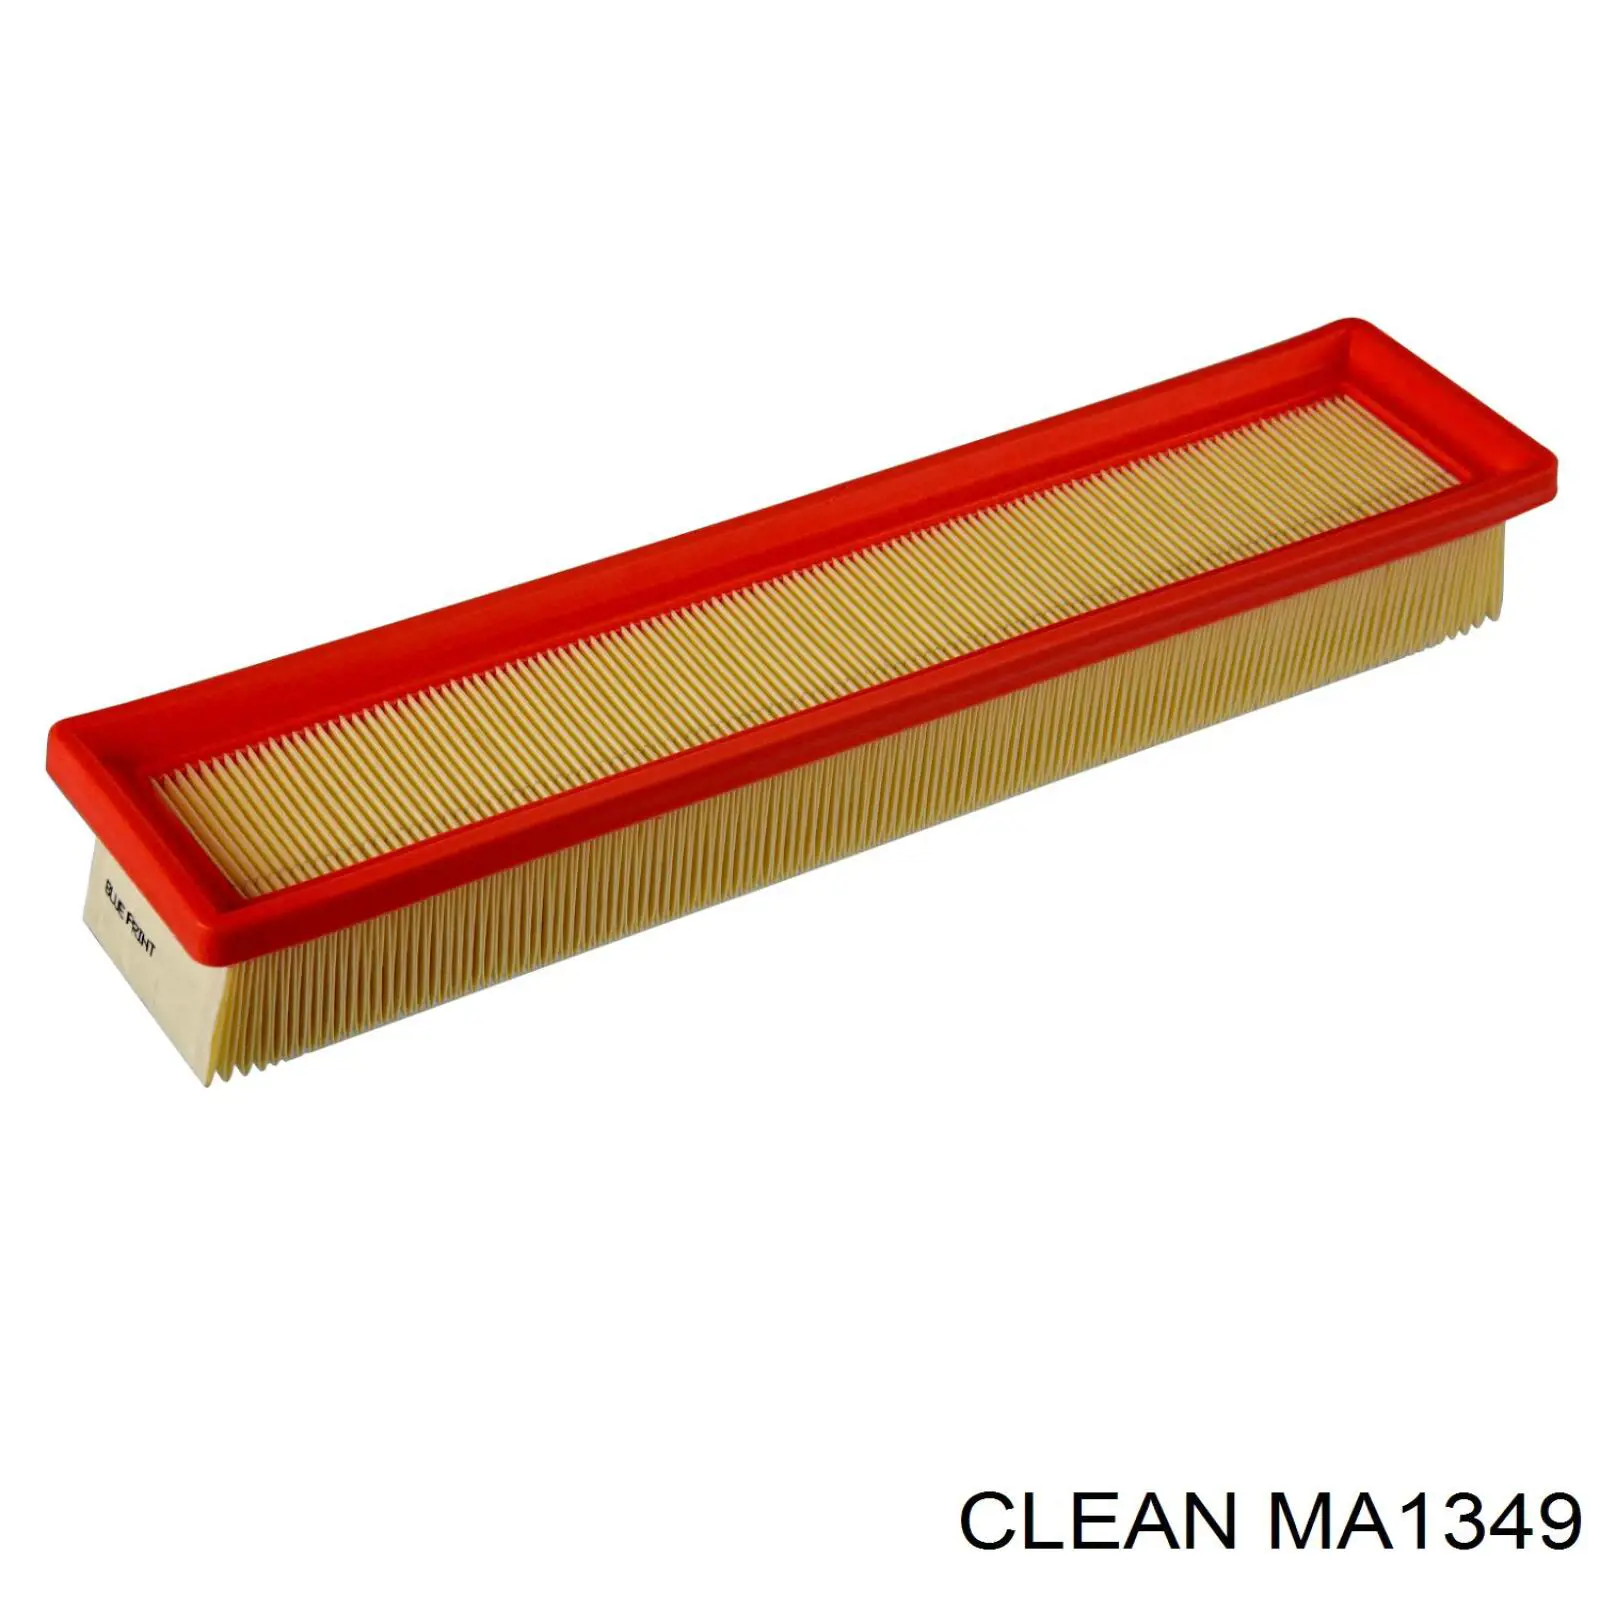 MA1349 Clean filtro de aire